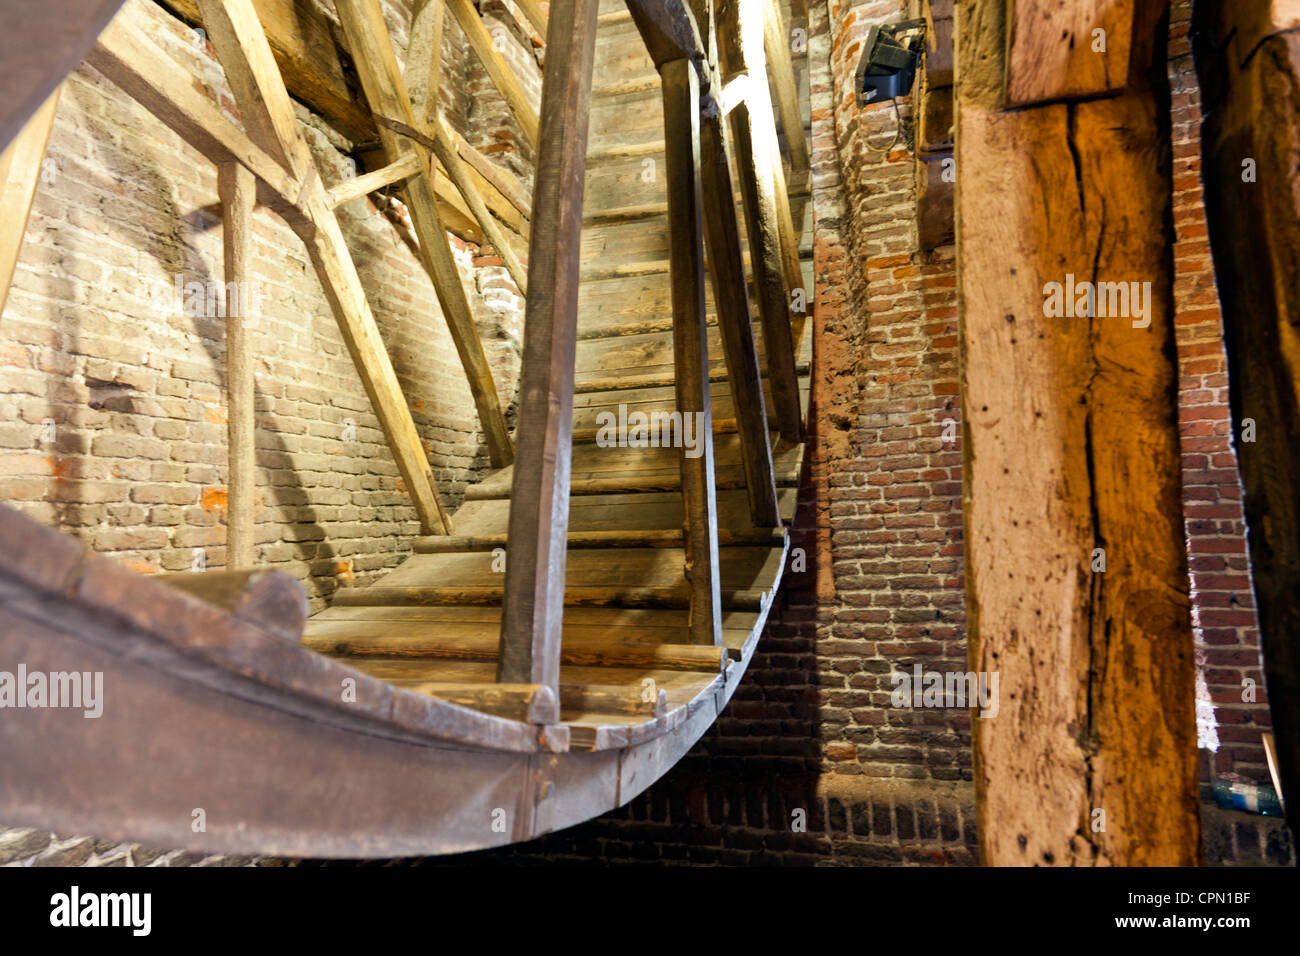 Amersfoort, die Niederlande: Die riesige hölzerne Rad im Inneren Koppeltor, einem mittelalterlichen Tor in die Stadt. Stockfoto